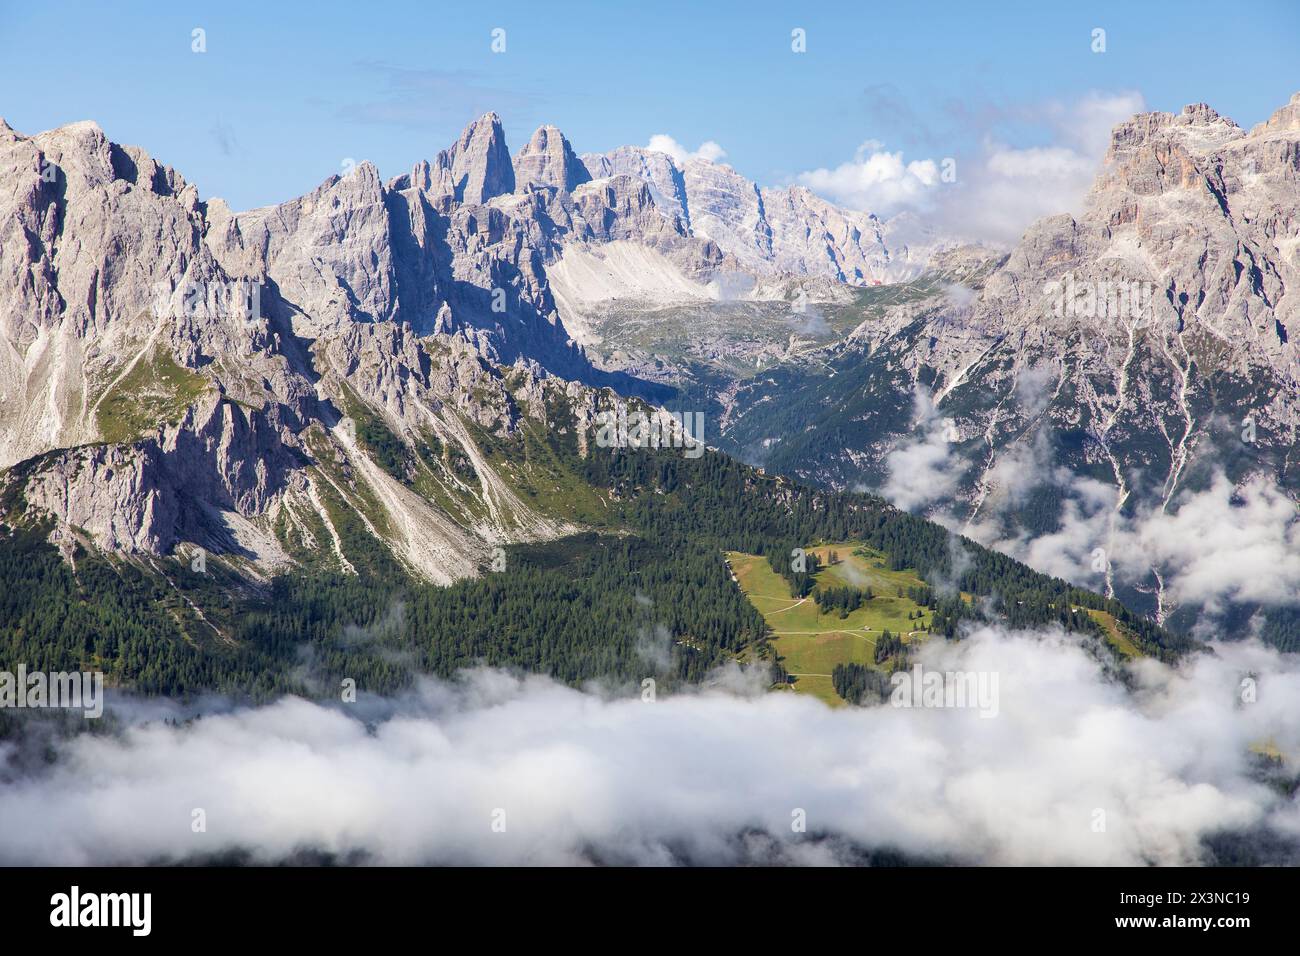 Vue panoramique sur les dolomites de Sexten ou Dolomiti di Sesto depuis les montagnes des Alpes carniennes, en Italie Banque D'Images